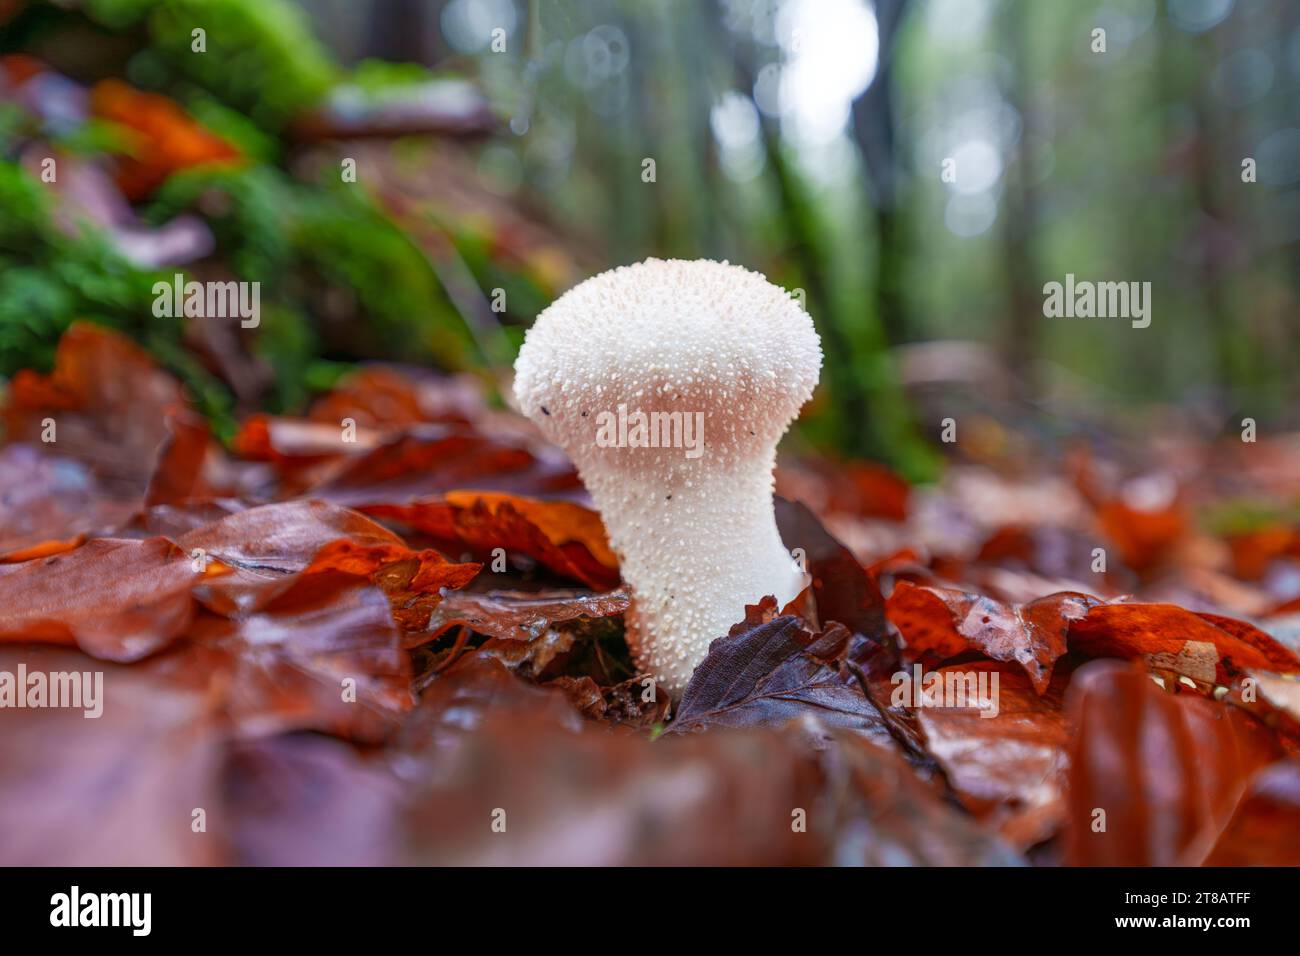 Belle vue rapprochée des champignons de la forêt dans l'herbe, saison d'automne. Petits champignons frais, croissant dans la forêt d'automne. Champignons et feuilles dans la forêt. Mushro Banque D'Images